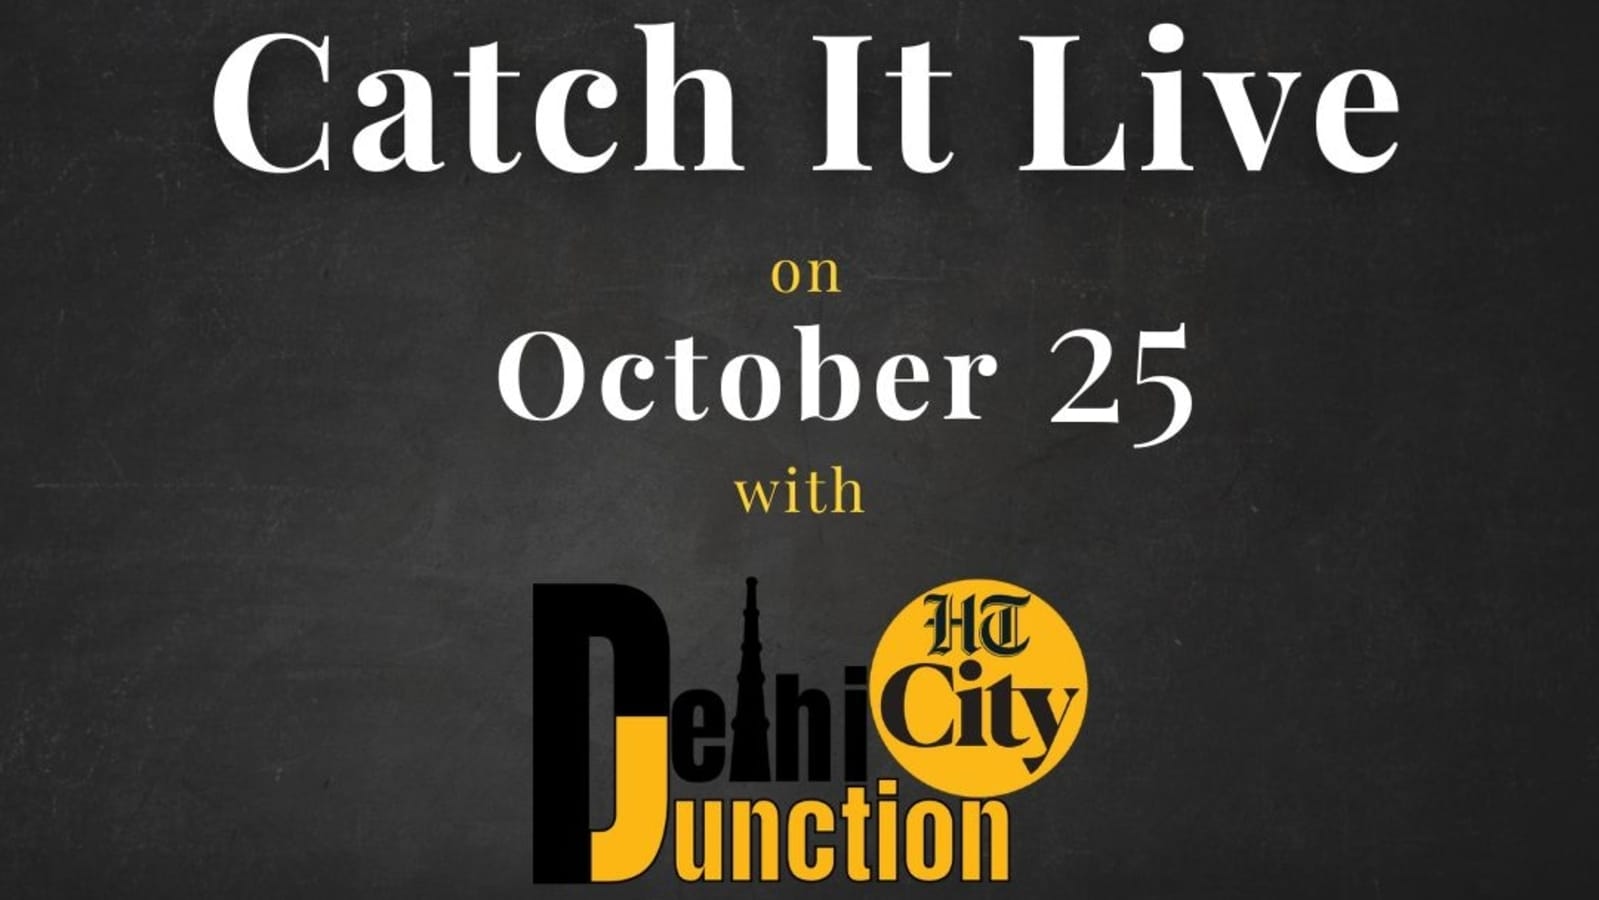 एचटी सिटी दिल्ली जंक्शन: 25 अक्टूबर को कैच इट लाइव